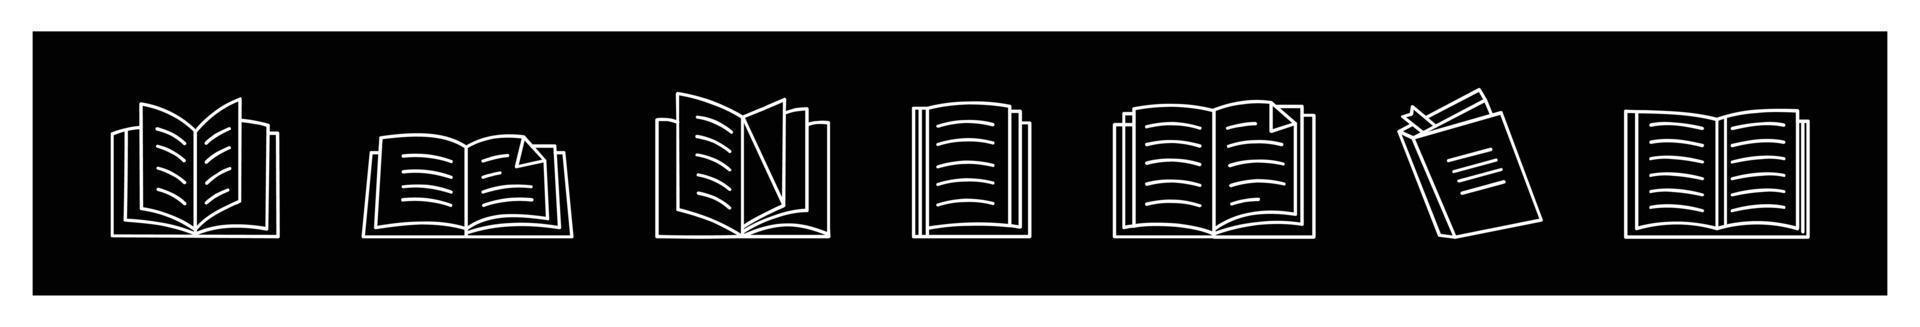 iconos de libros establecidos en la ilustración vectorial de estilo de línea delgada. colección de símbolos de educación. libro abierto plano y logotipo de estilo de línea vector